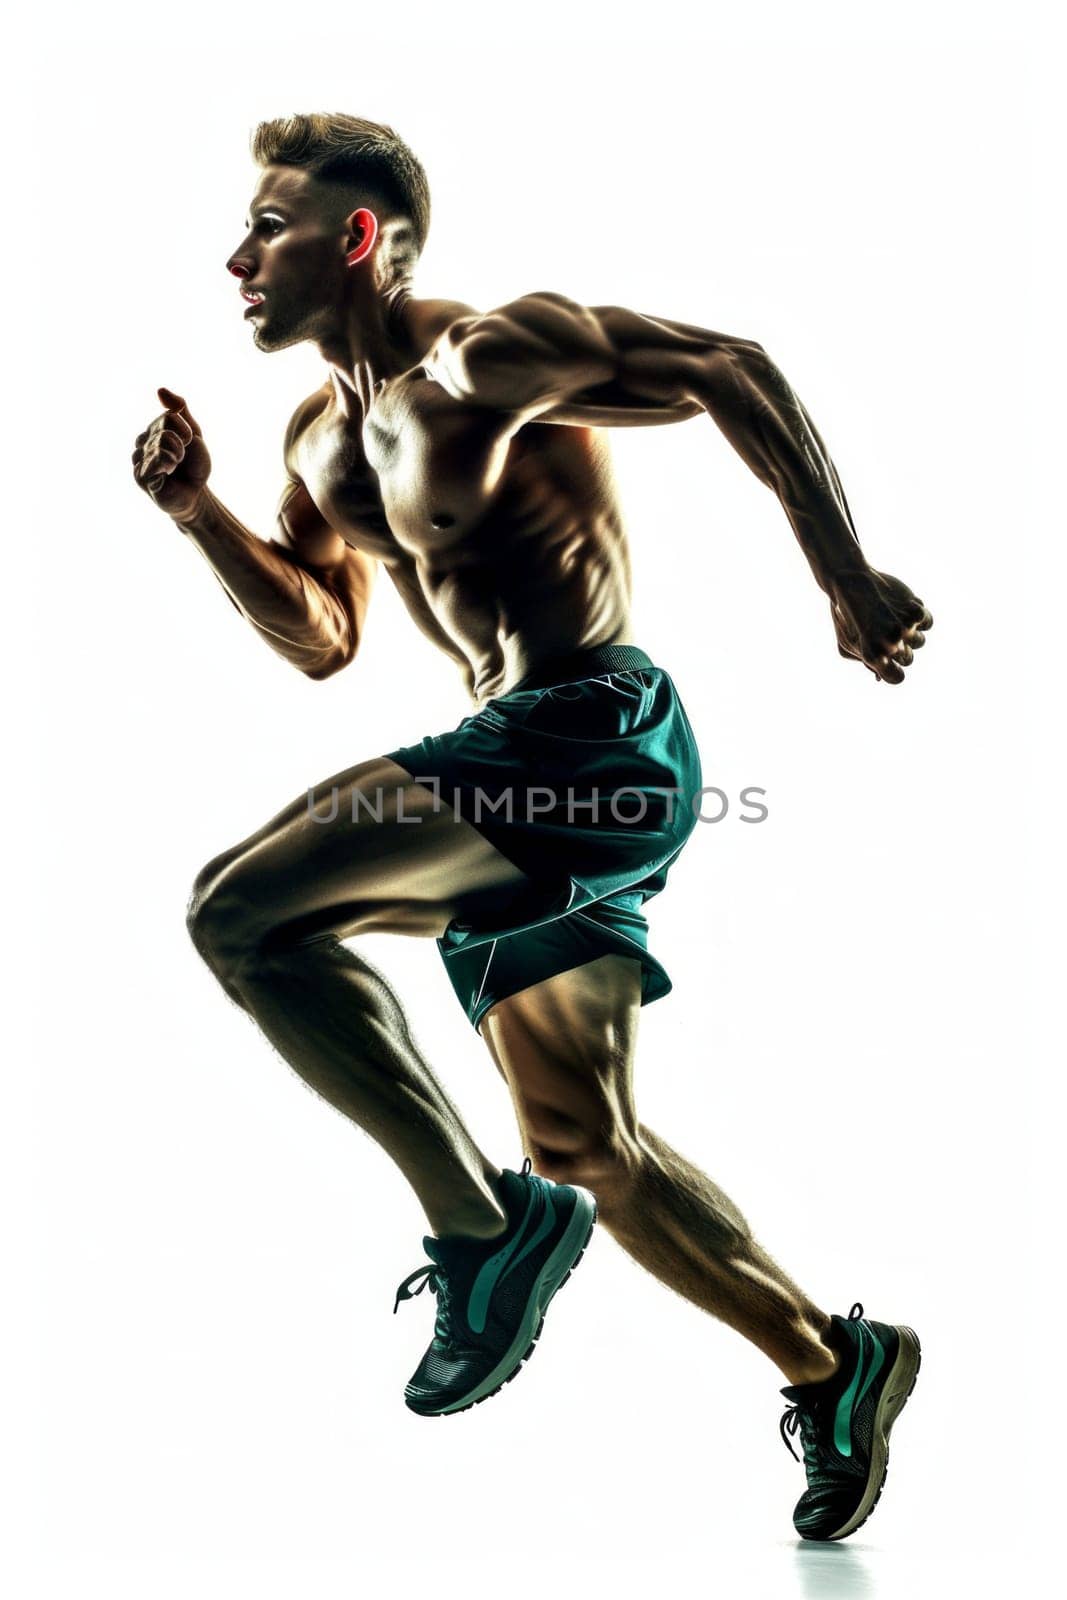 Athlete running isolated on white background.